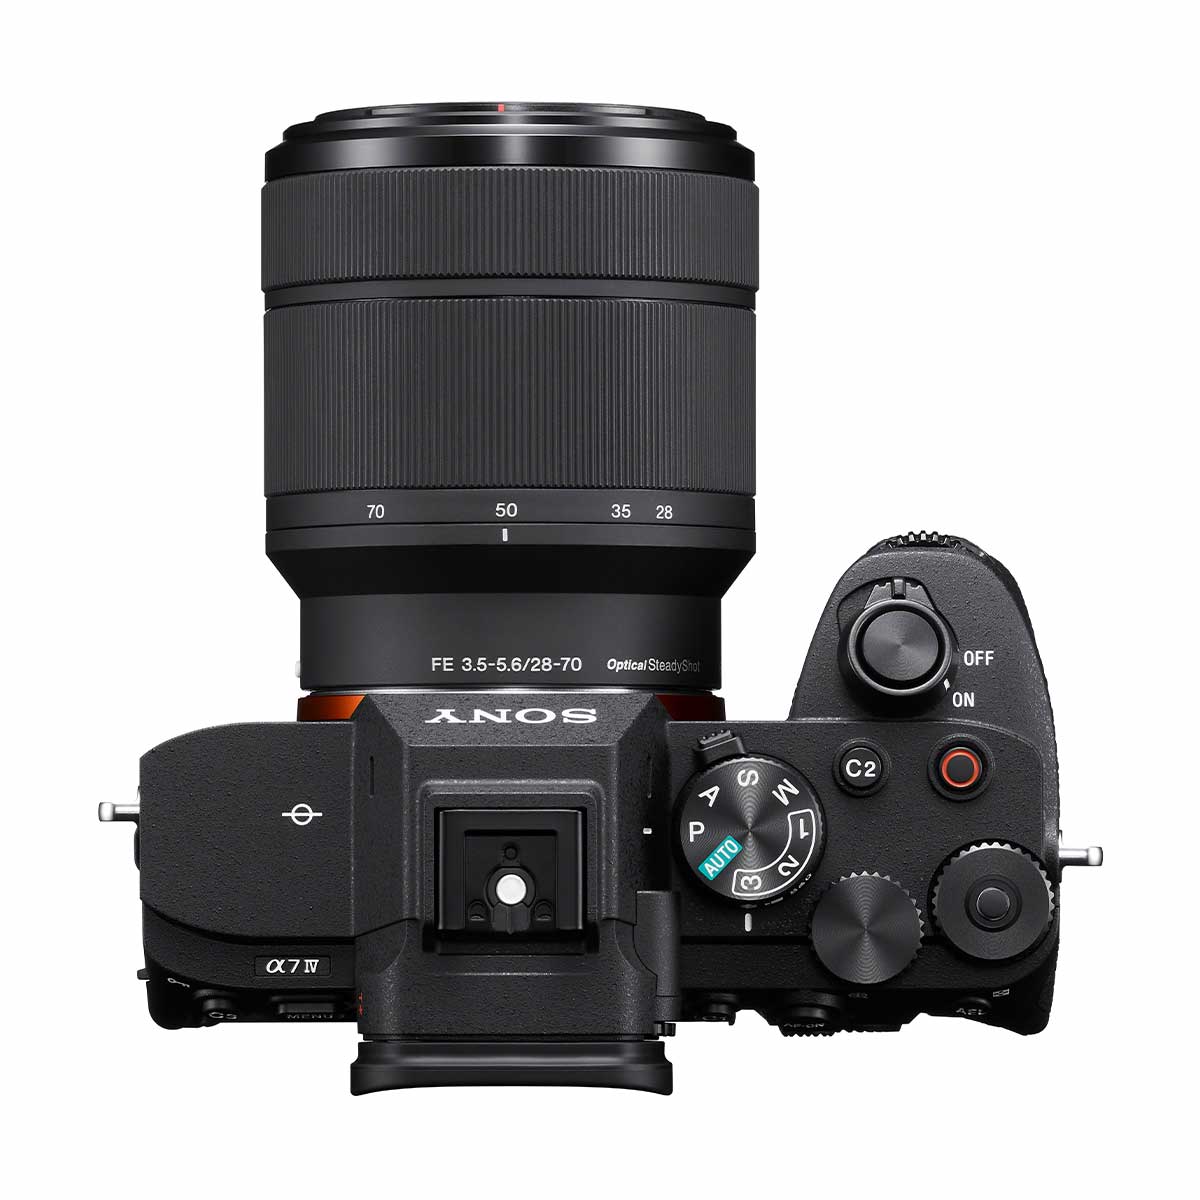 Sony Alpha a7 IV with FE 28-70mm f3.5-5.6 OSS Lens Kit